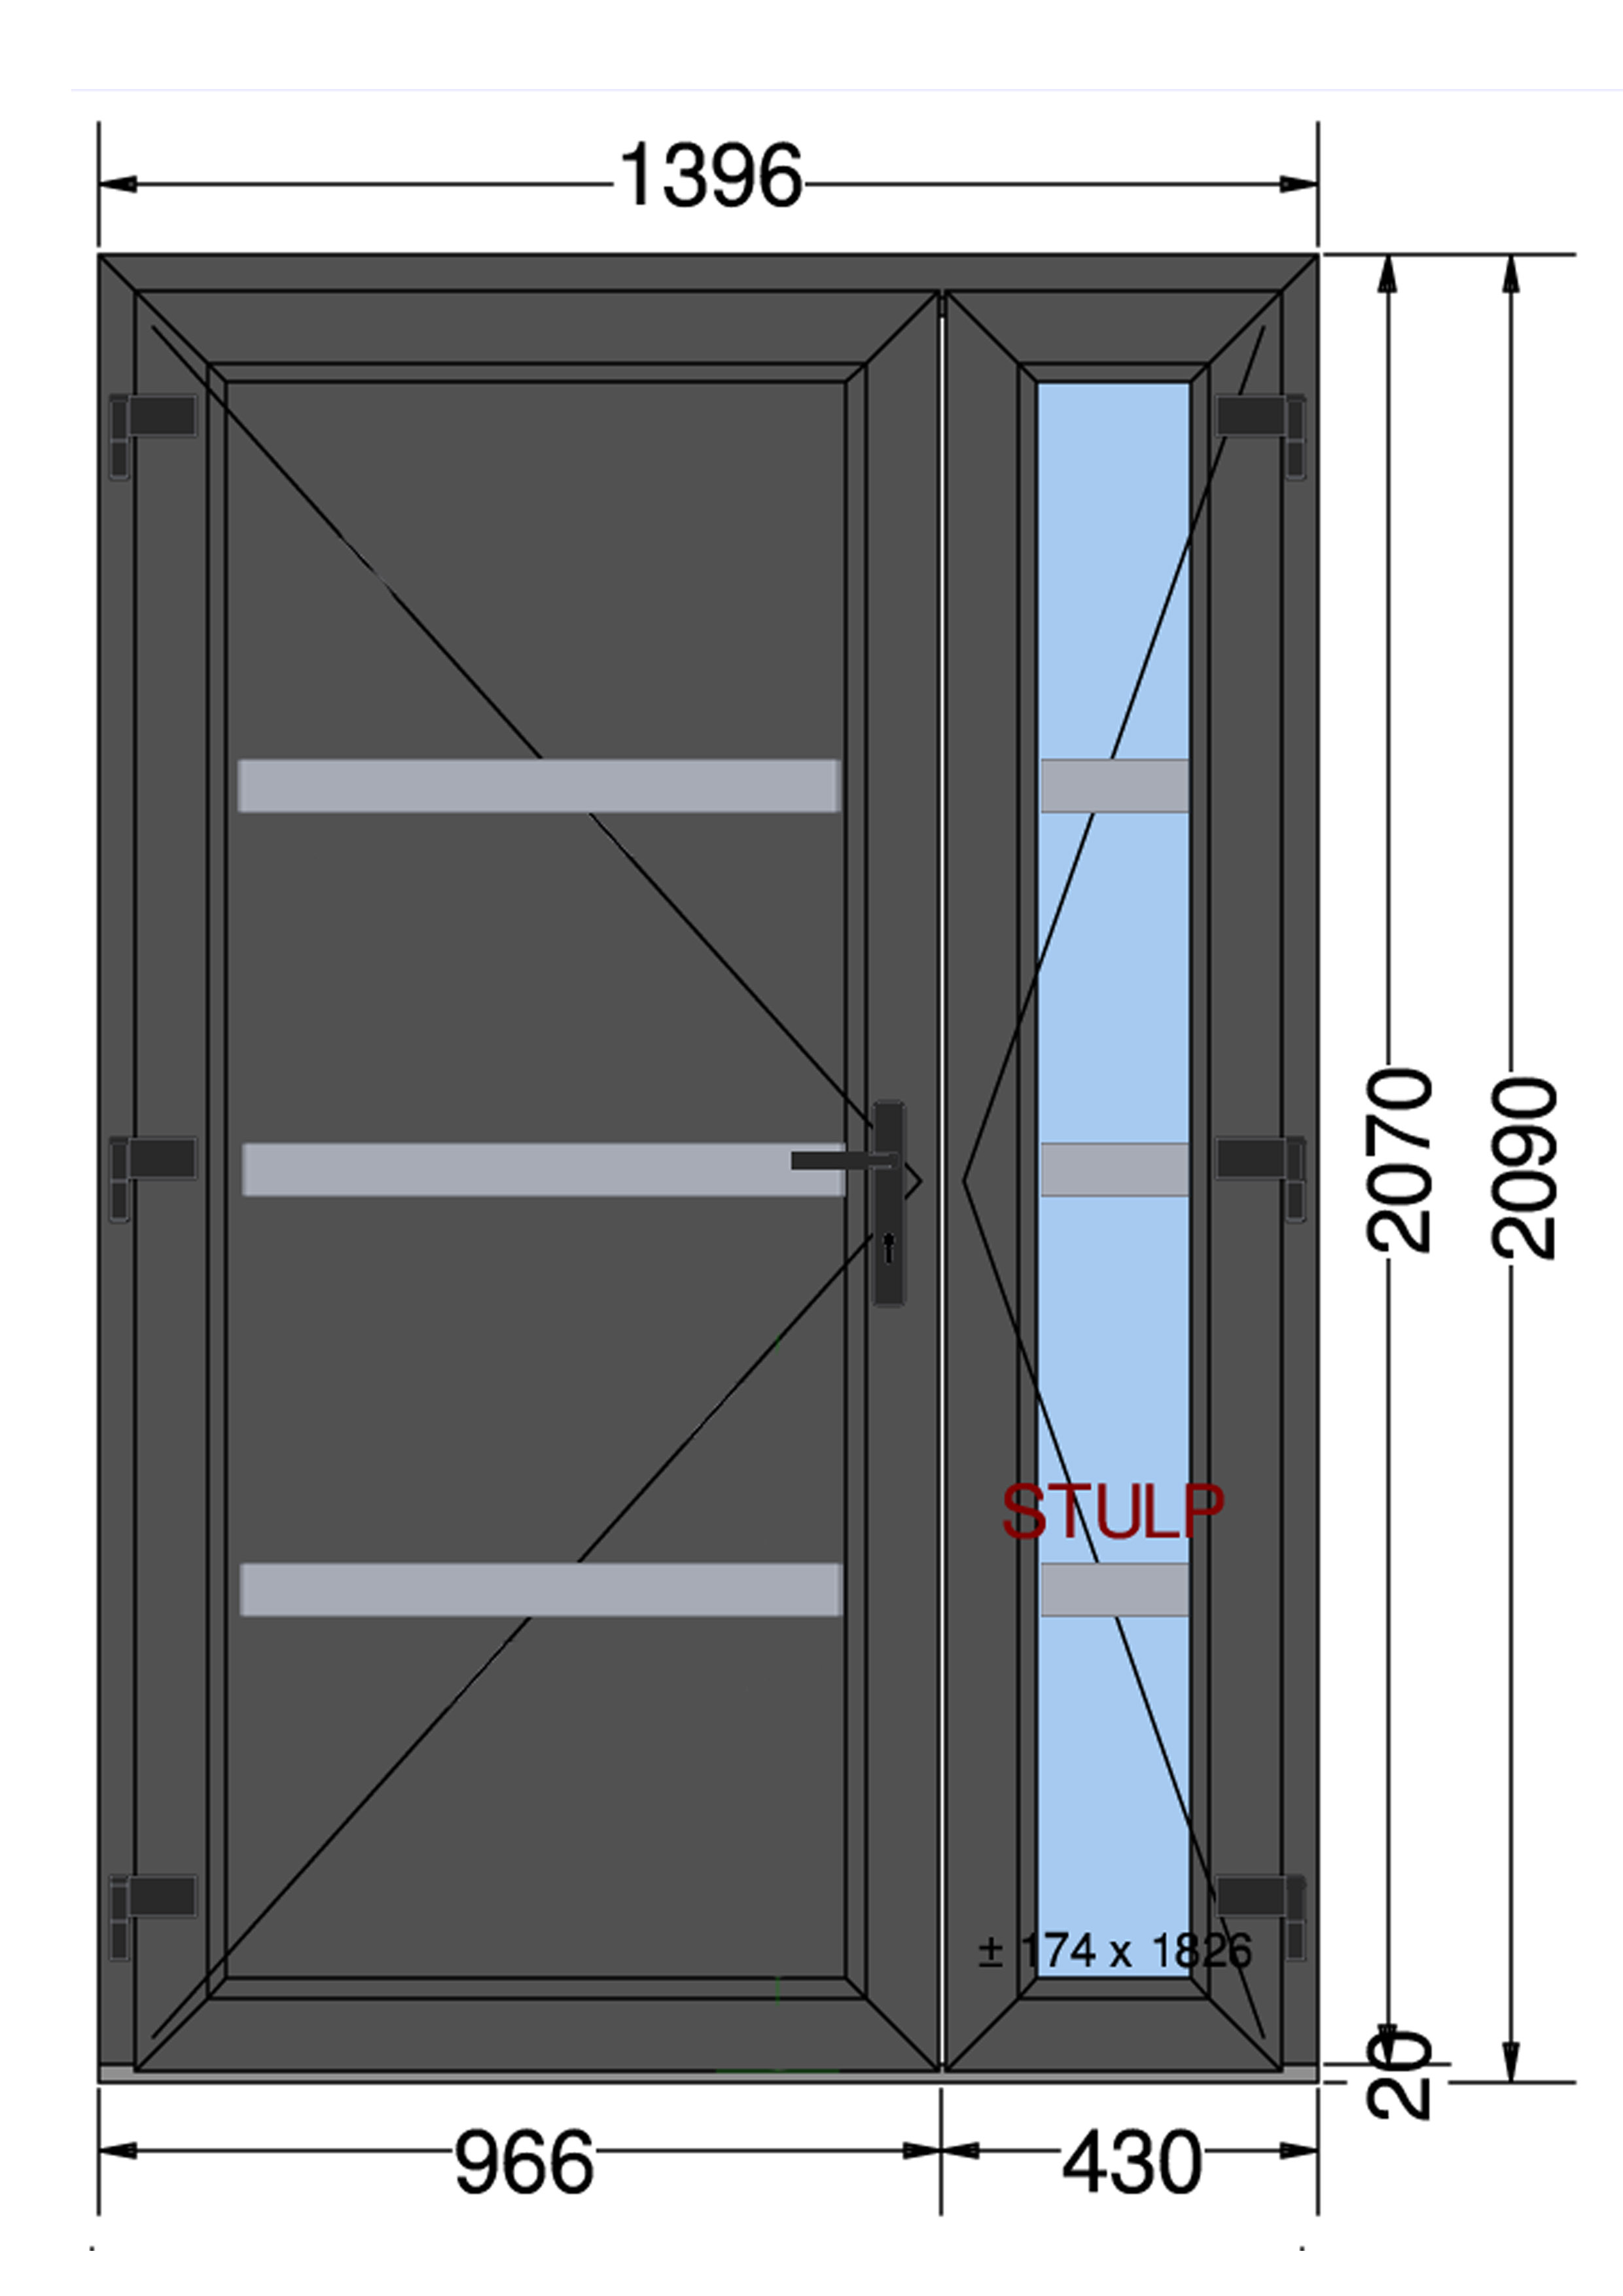 Drzwi PCV 1396 x 2090 Antracyt